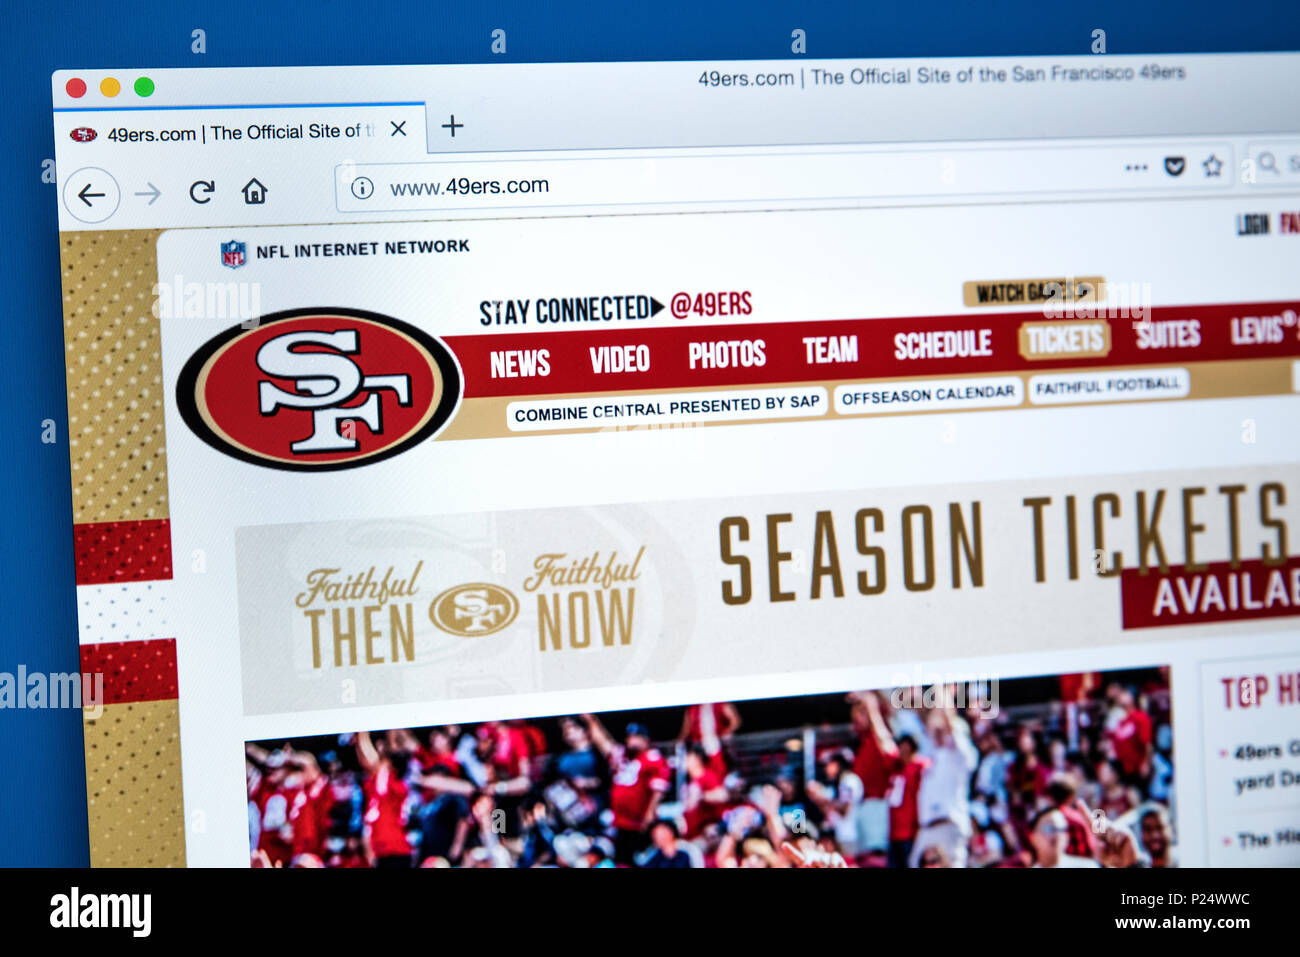 49ers com official site